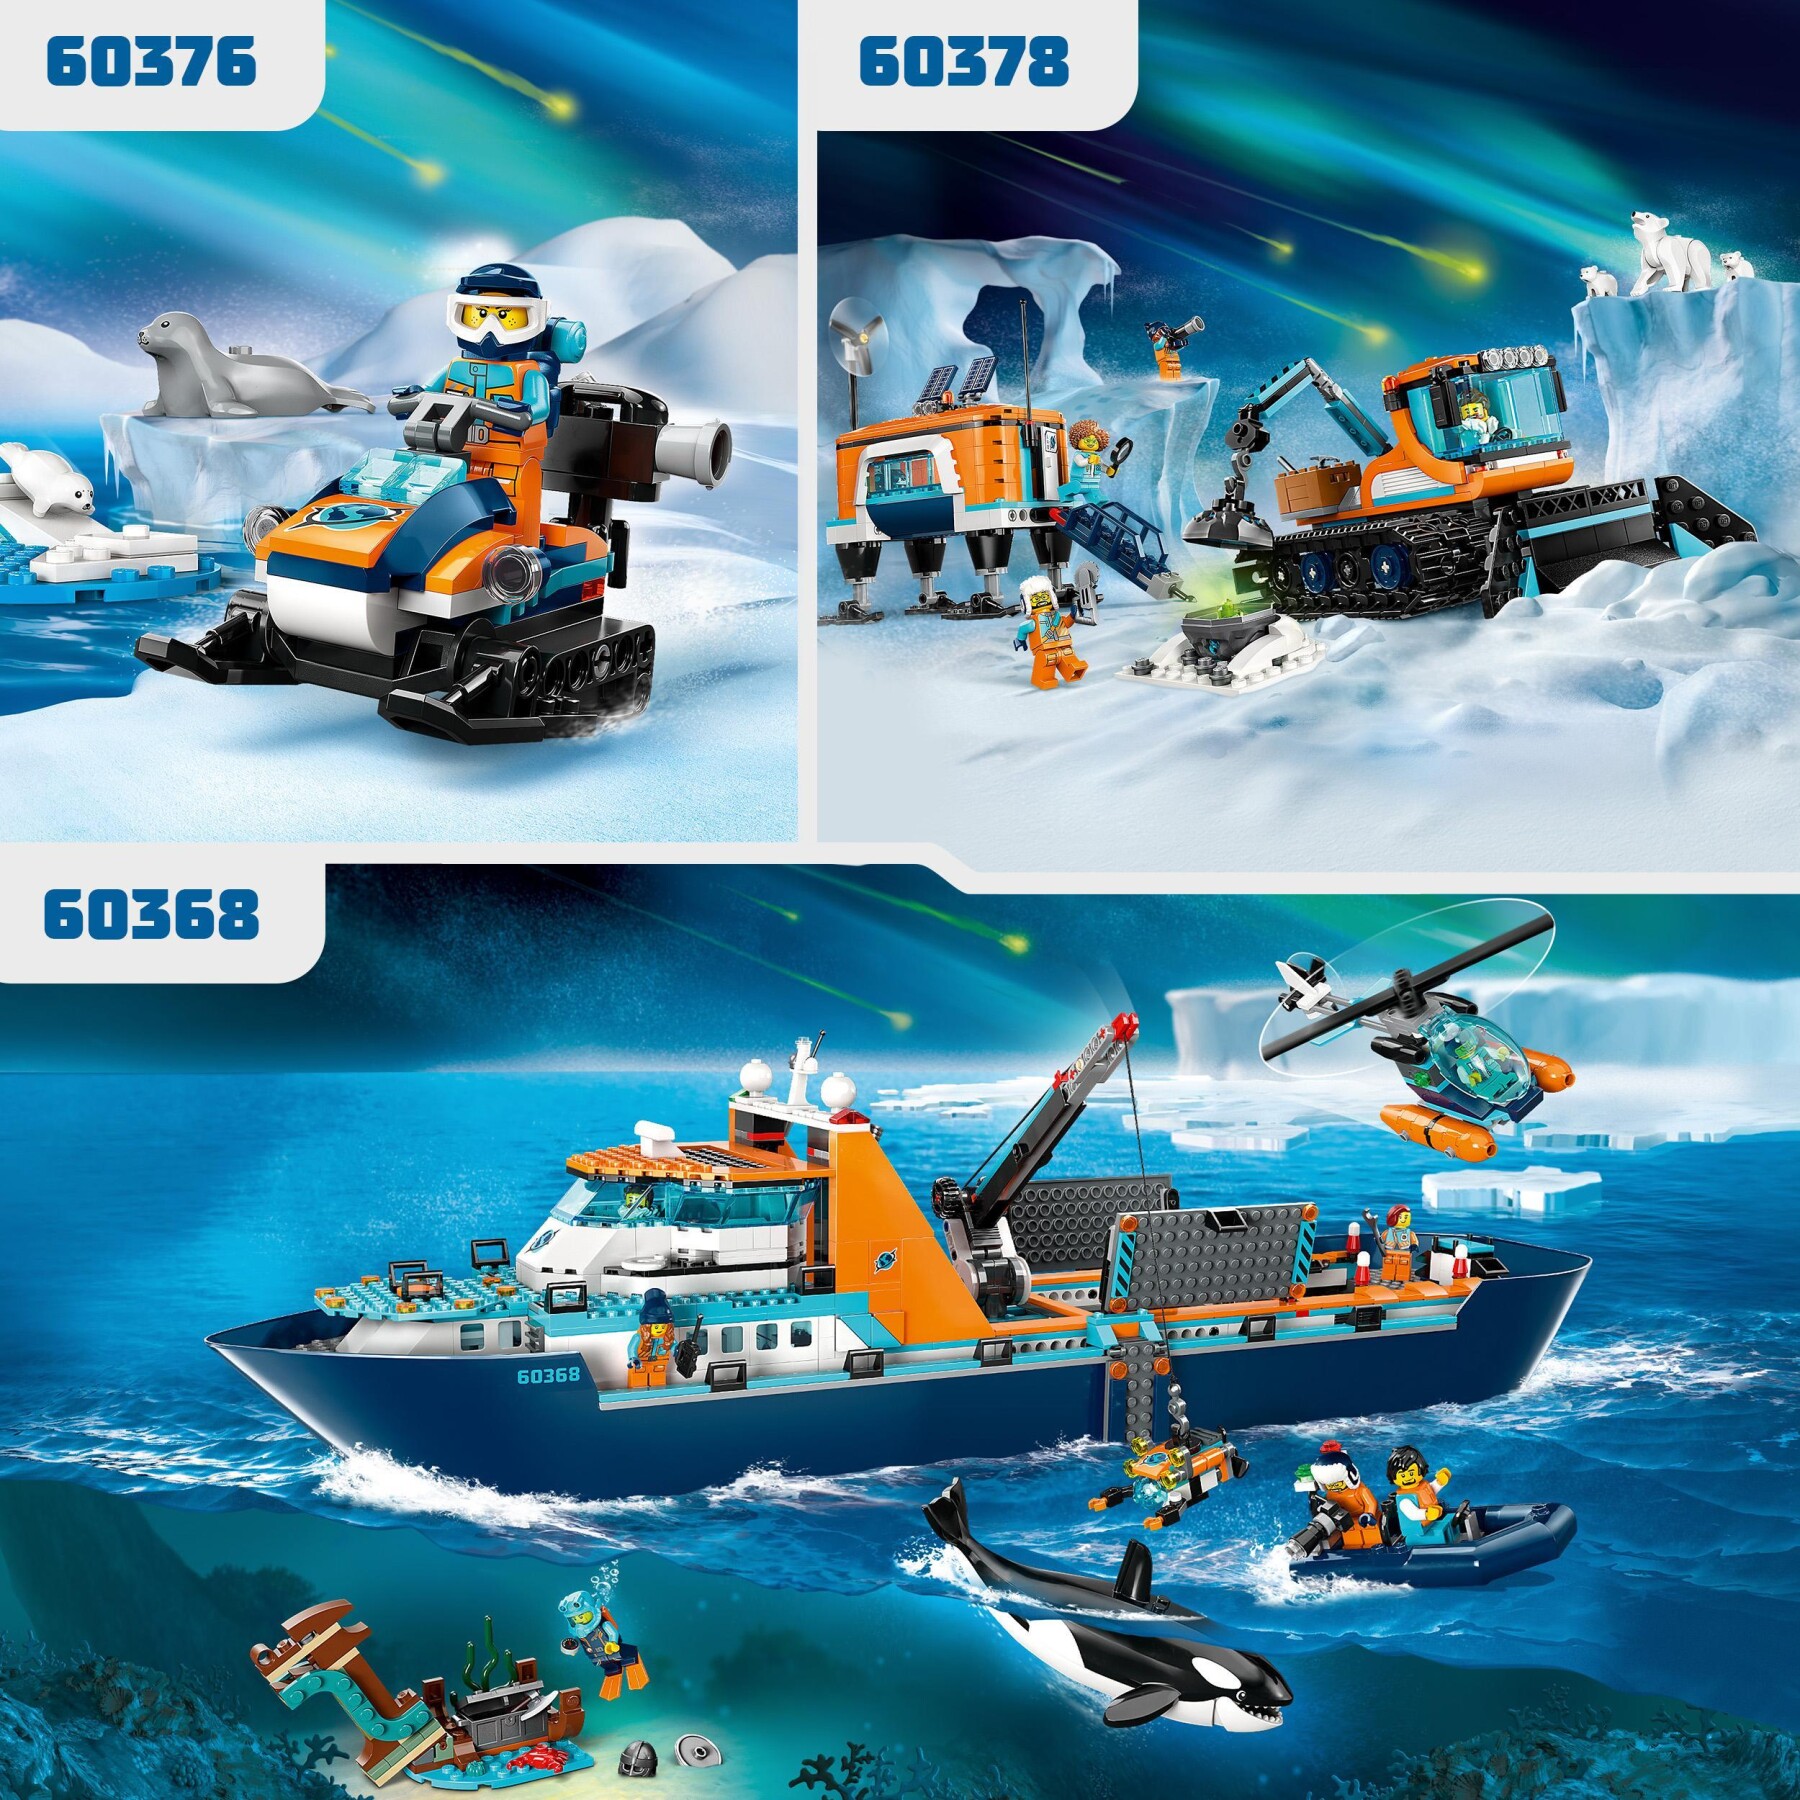 Lego city 60376 gatto delle nevi artico, gioco per bambini 5+ anni, costruzioni con veicolo, foche e minifigure, idea regalo - LEGO CITY